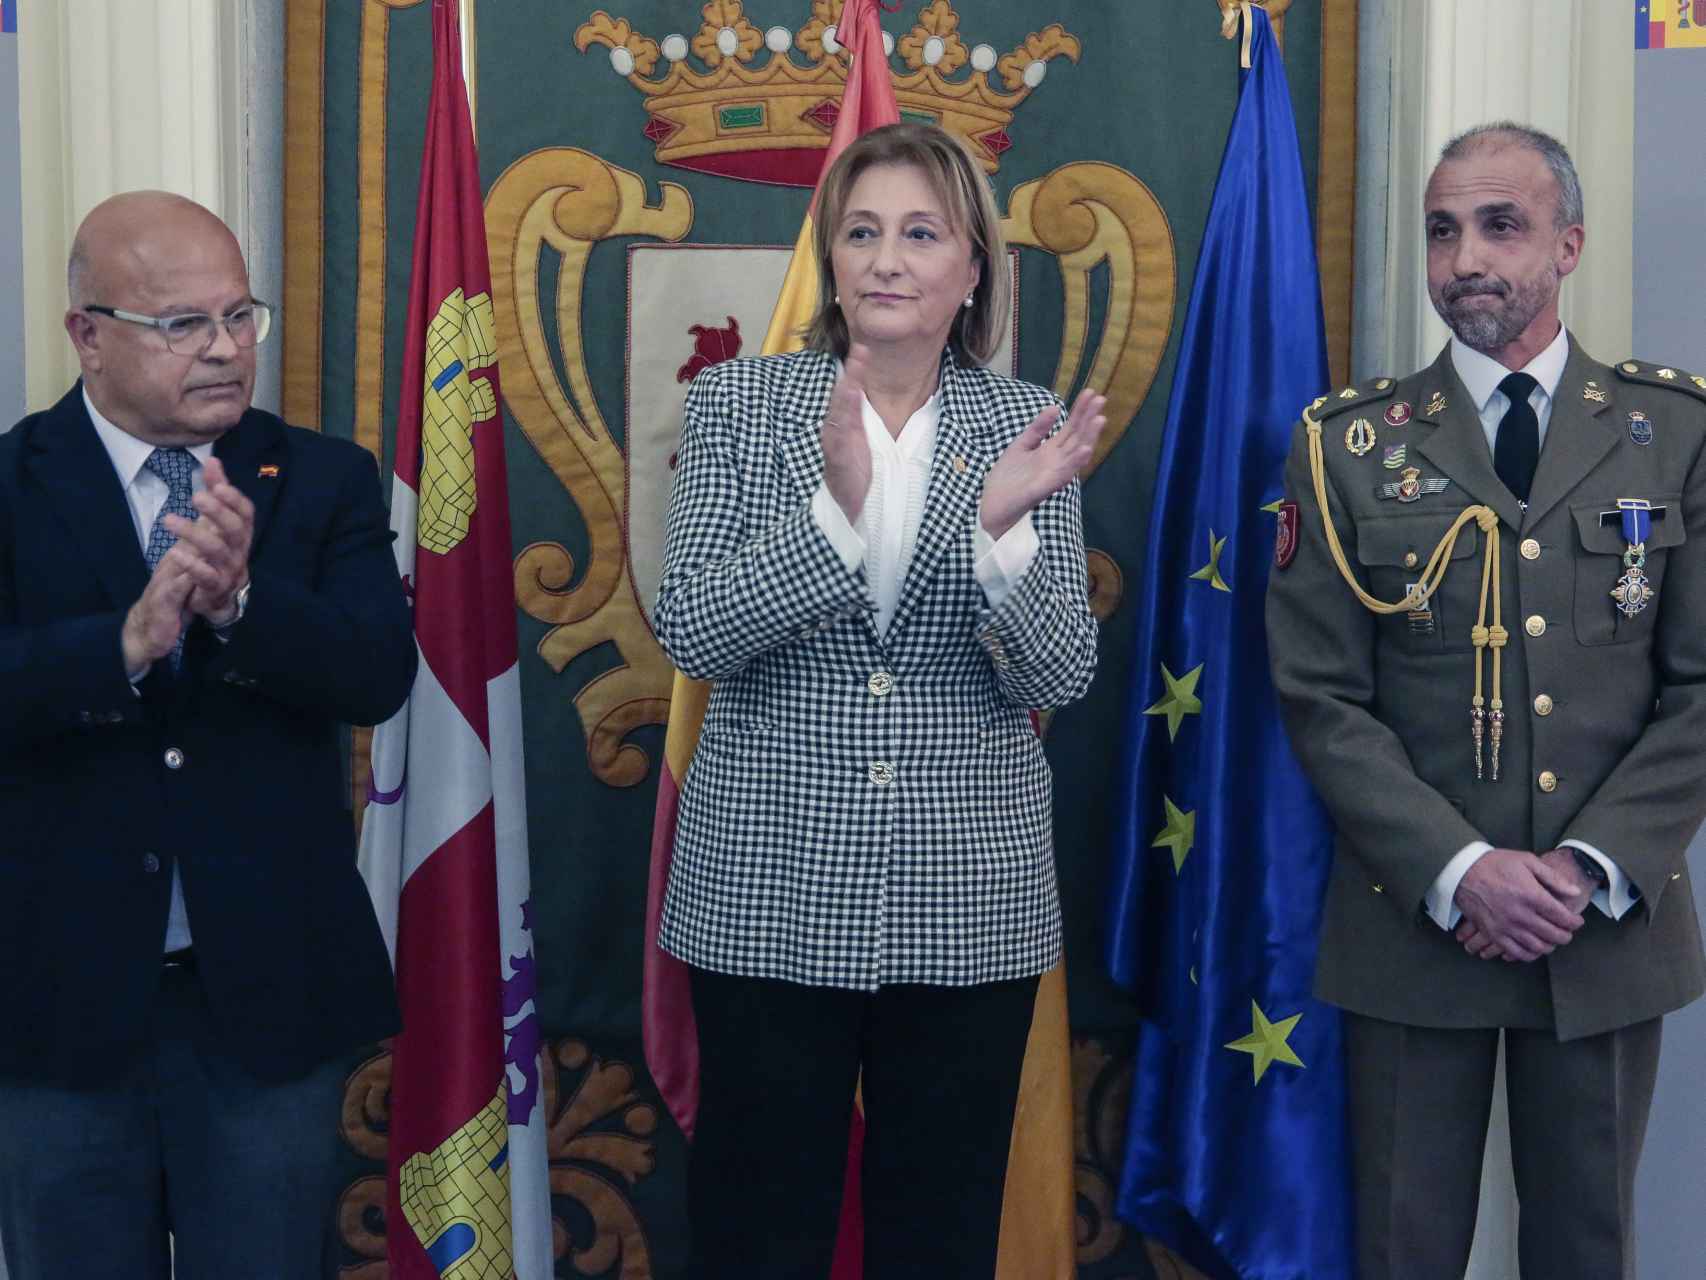 El teniente coronel de la UME José Alberto Baraja Navarro recibe en León la Cruz de Oficial de la Orden del Mérito Civil, este lunes.